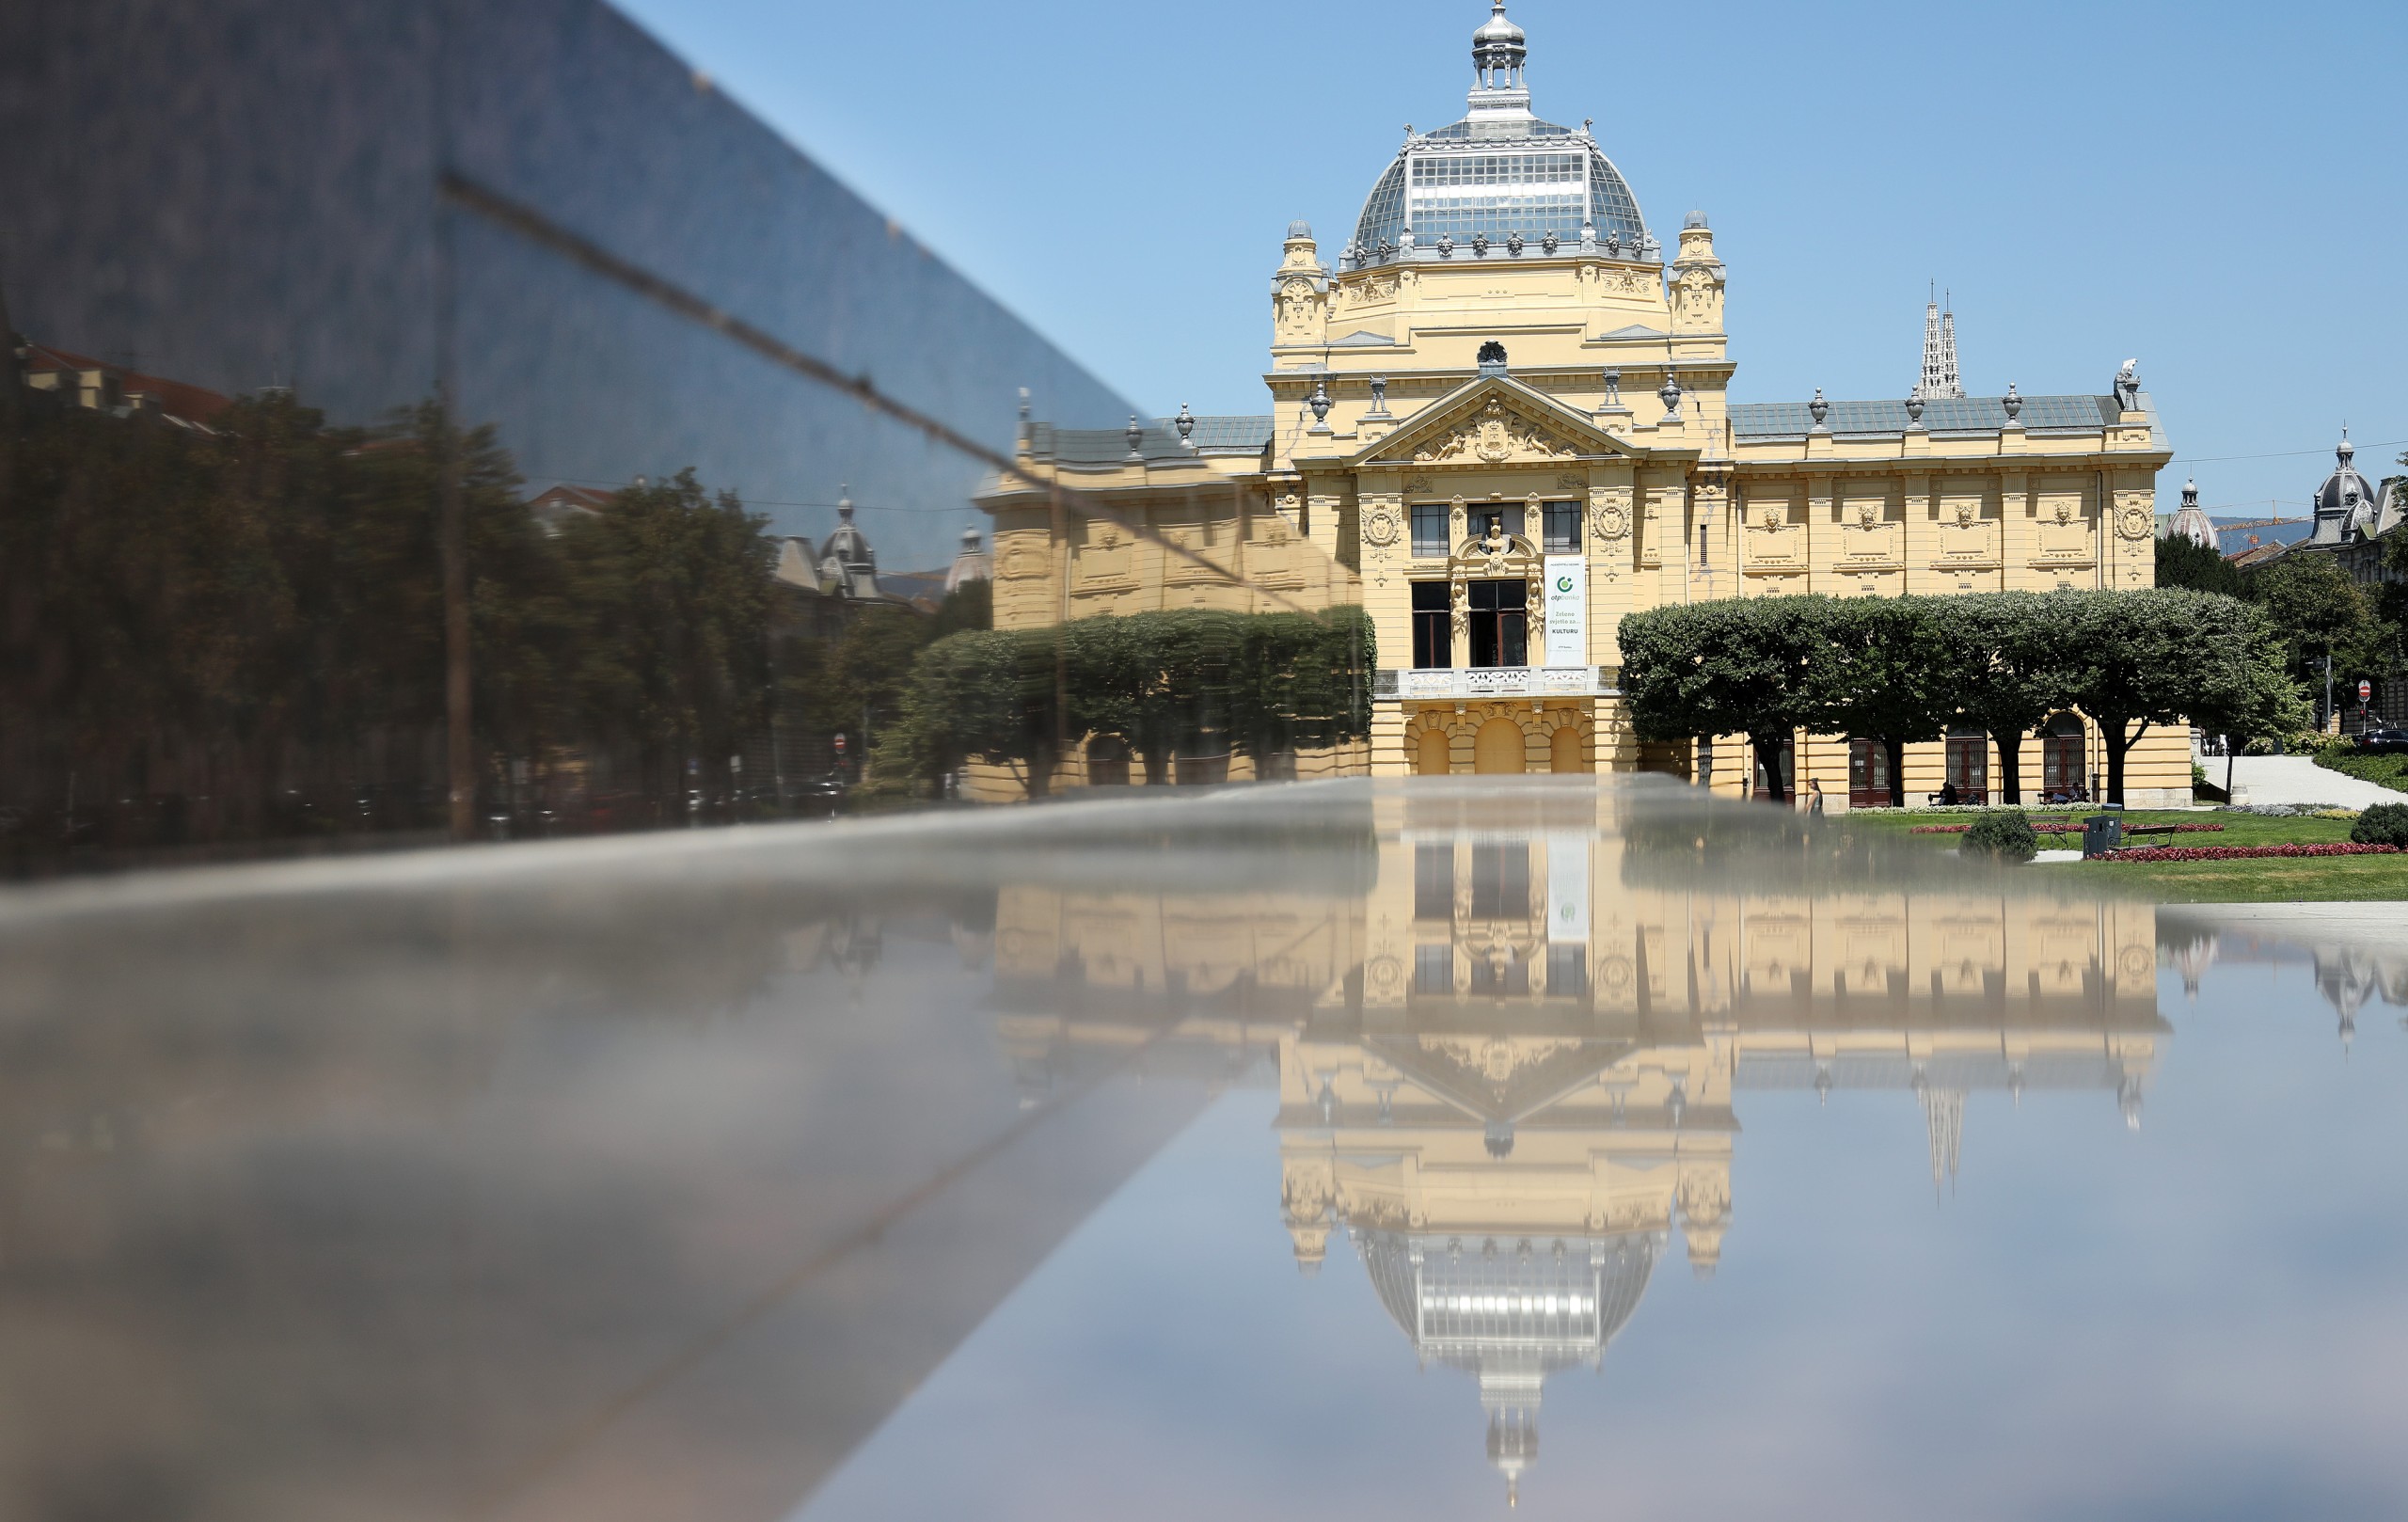 20.07.2022., Zagreb, Na Trgu kralja Tomislava nalazi se Umjetnicki paviljon. Sagradjen je povodom Milenijske izlozbe u Budimpesti 1896. godine. Na paviljonu su primijenjena najnovija iskustva u tehnologiji gradnje s metalnim kosturom. To je omogucilo da se paviljon u Budimpesti rastavi i vlakom dopremi u Zagreb da bi se ponovo montirao na sadasnjem mjestu. Svecano otvorenje upriliceno je 1898. godine velikom izlozbom suvremenih umjetnika. Time je Umjetnicki paviljon postao prvi izlozbeni prostor sagradjen samo za tu namjenu. Od tada se tu organiziraju izlozbe najvecih domacih i stranih umjetnika. Photo: Emica Elvedji/PIXSELL